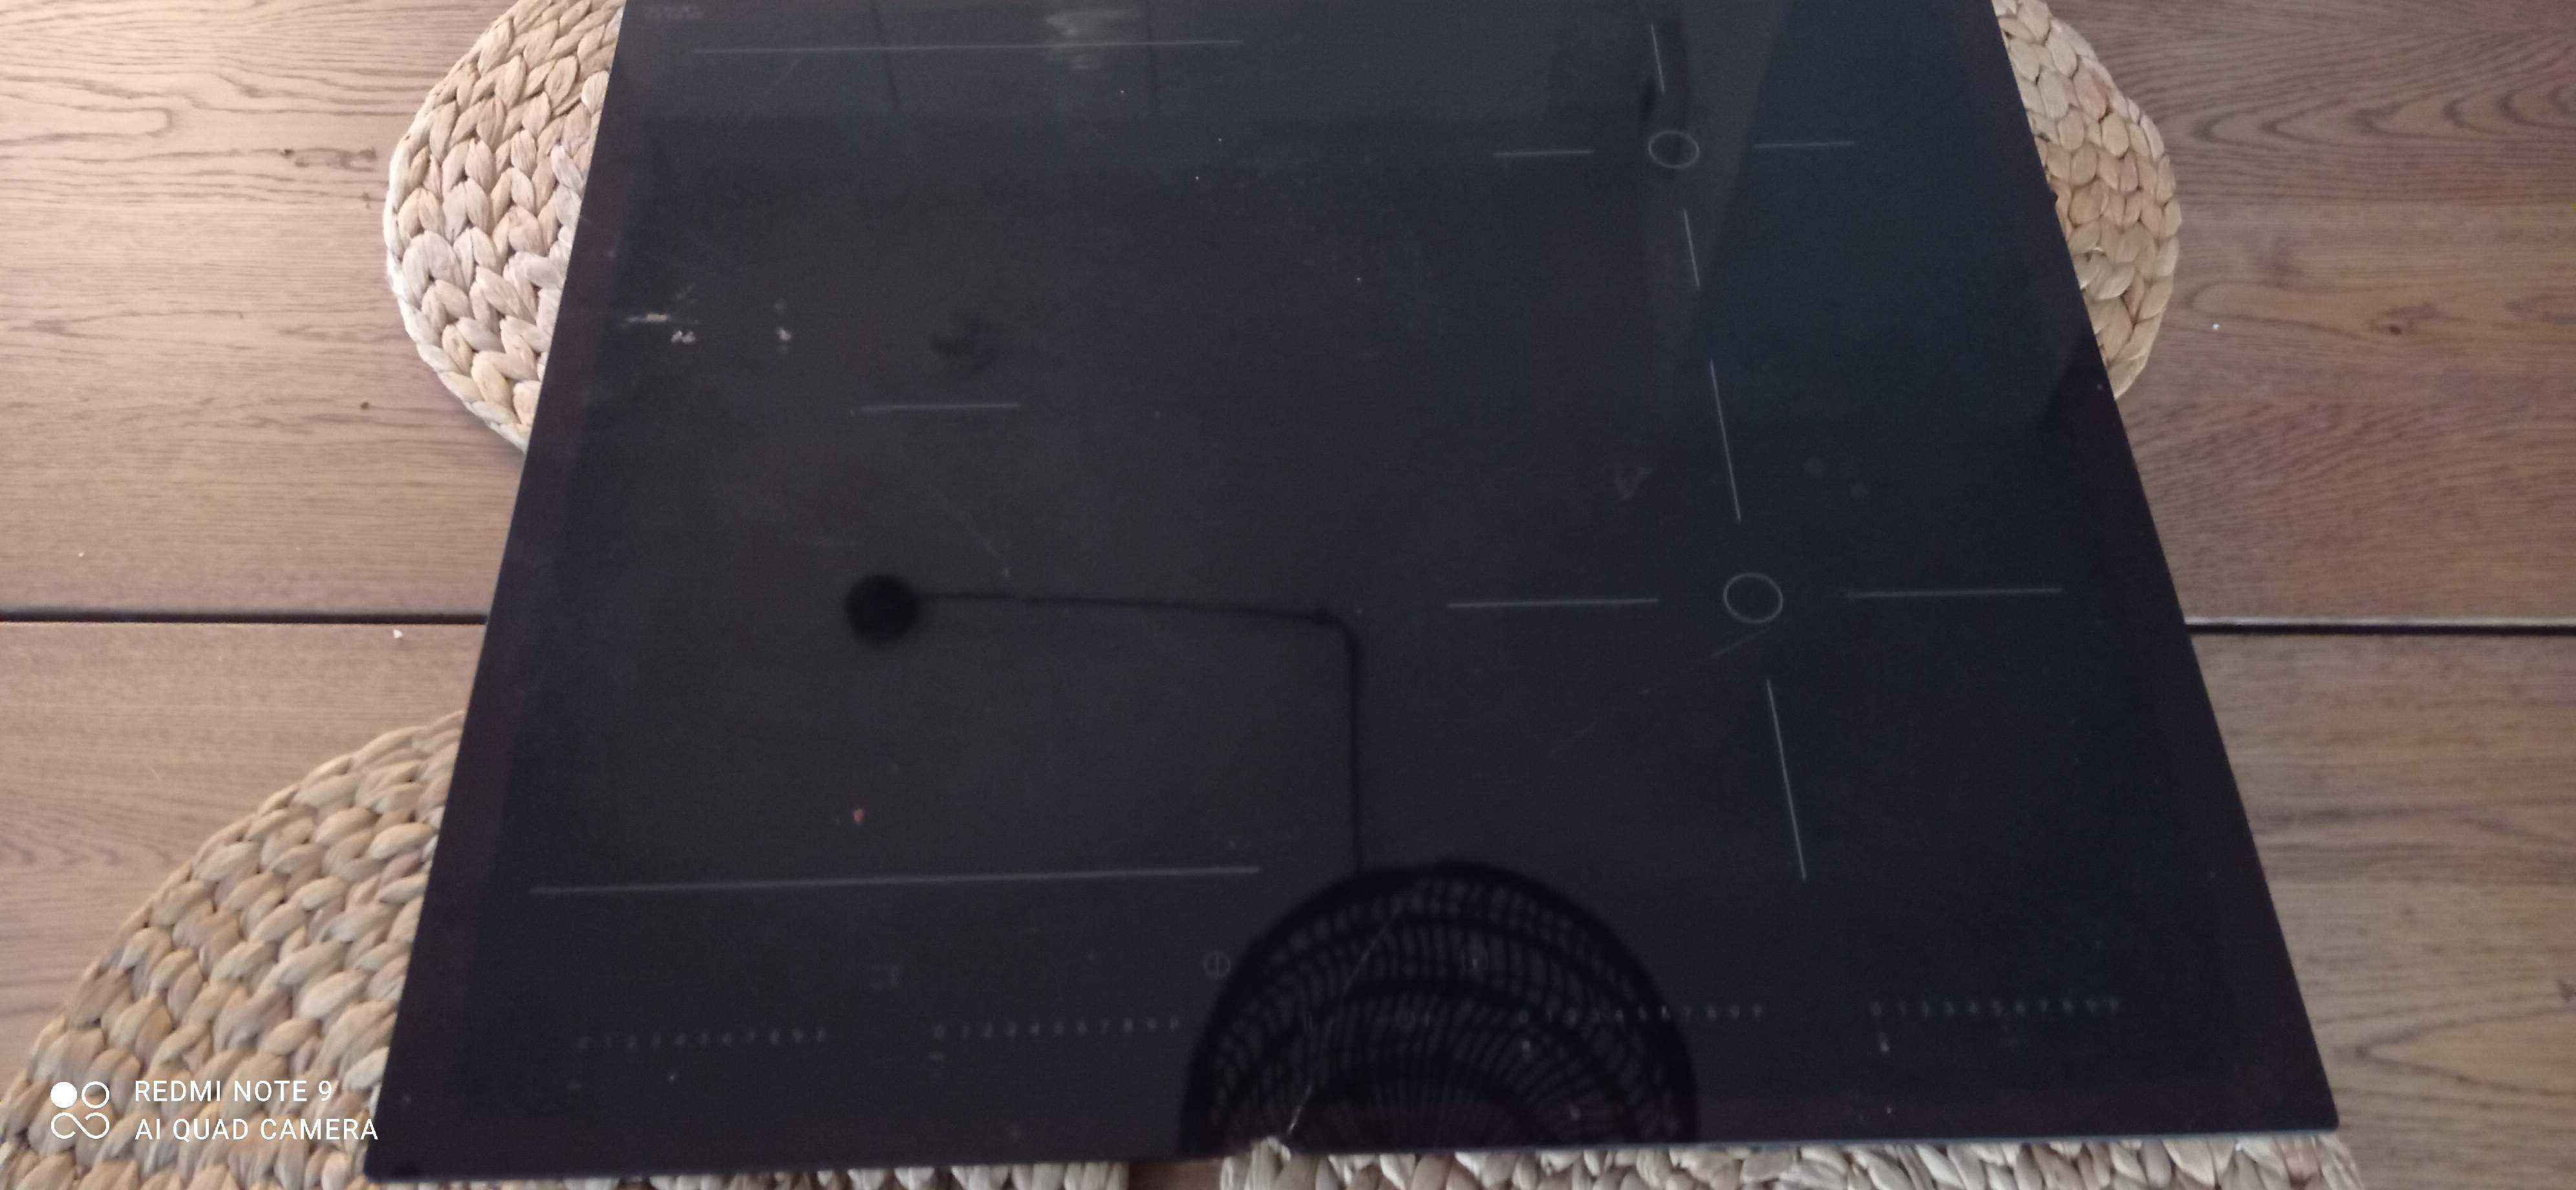 Płyta indukcyjna IKEA Otrolig Whirlpool sprawna zbite szkło uszkodzona